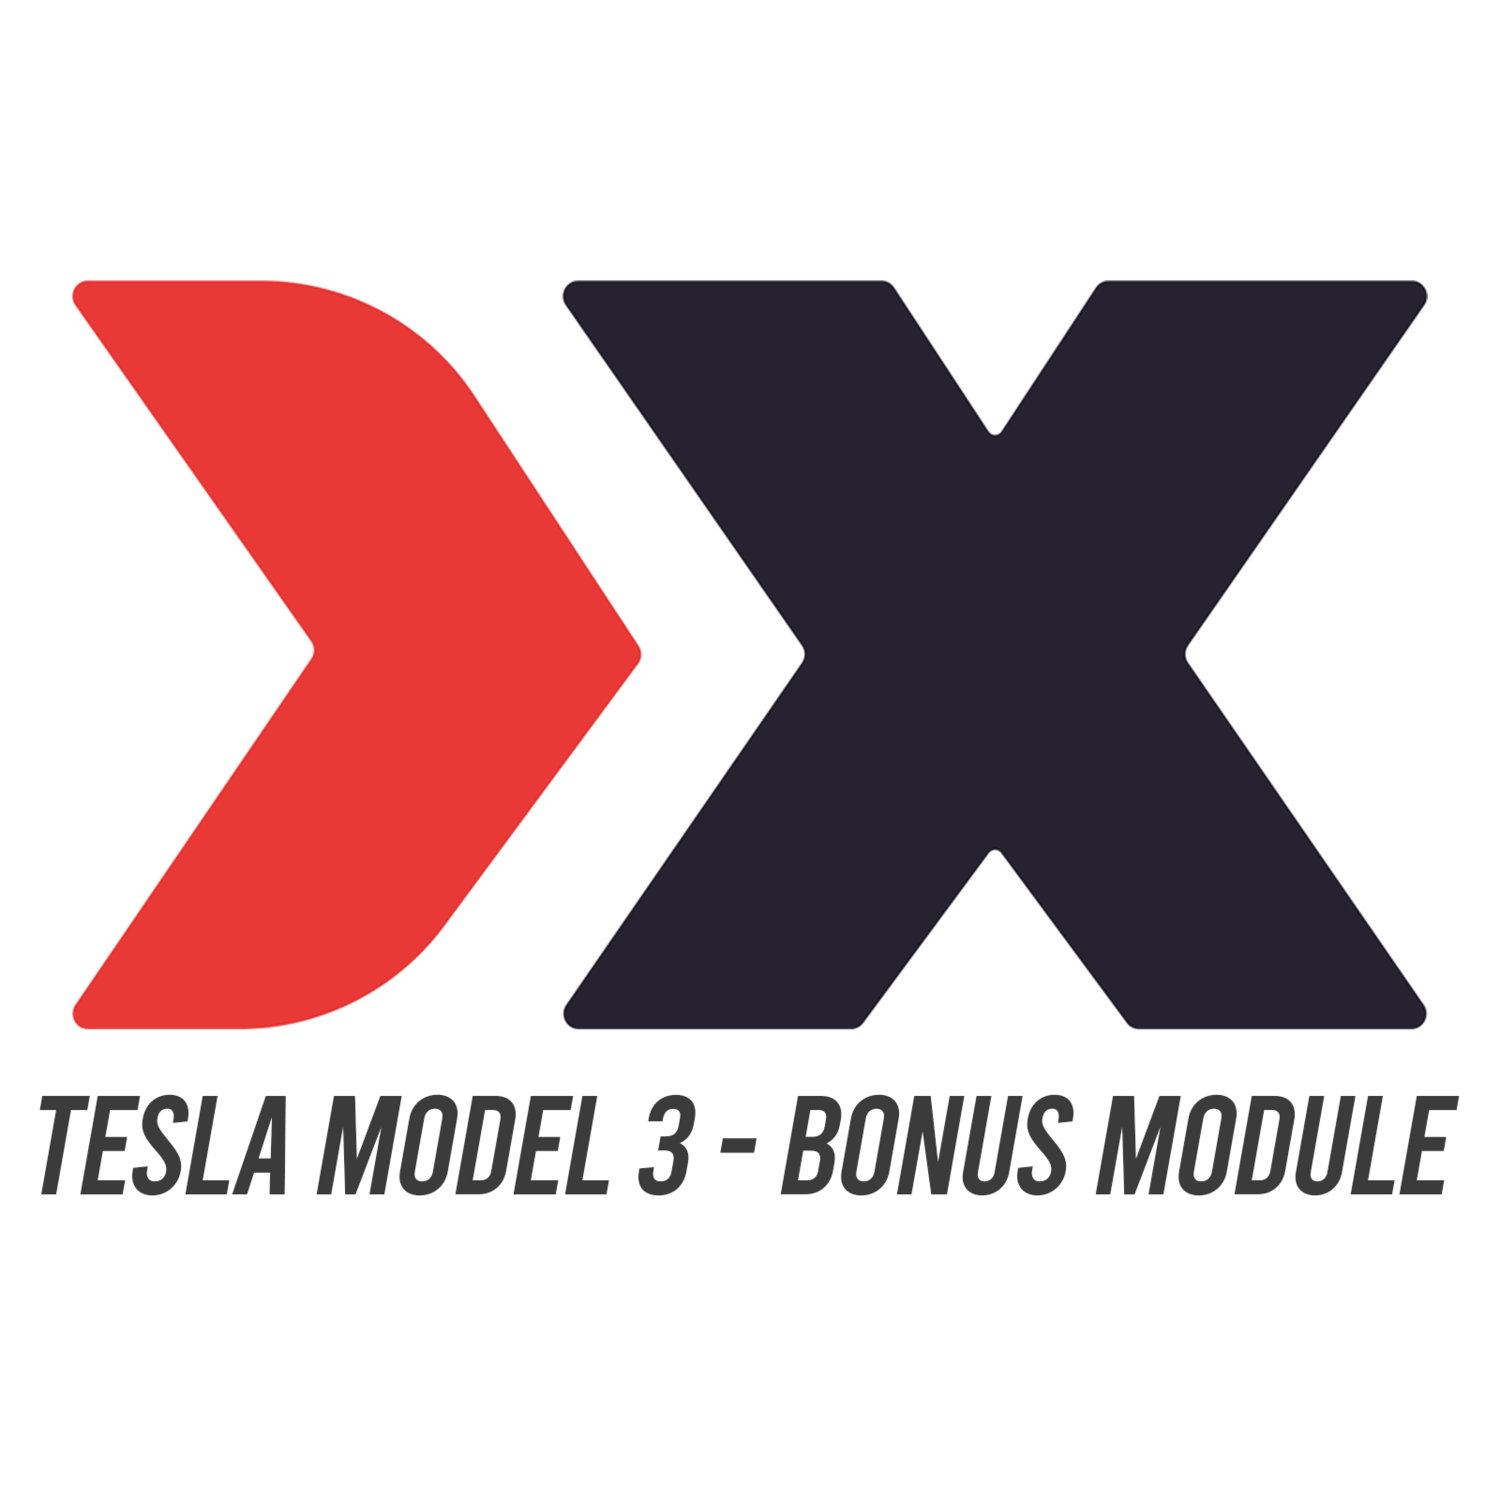 BONUS MODULE - Tesla Model 3